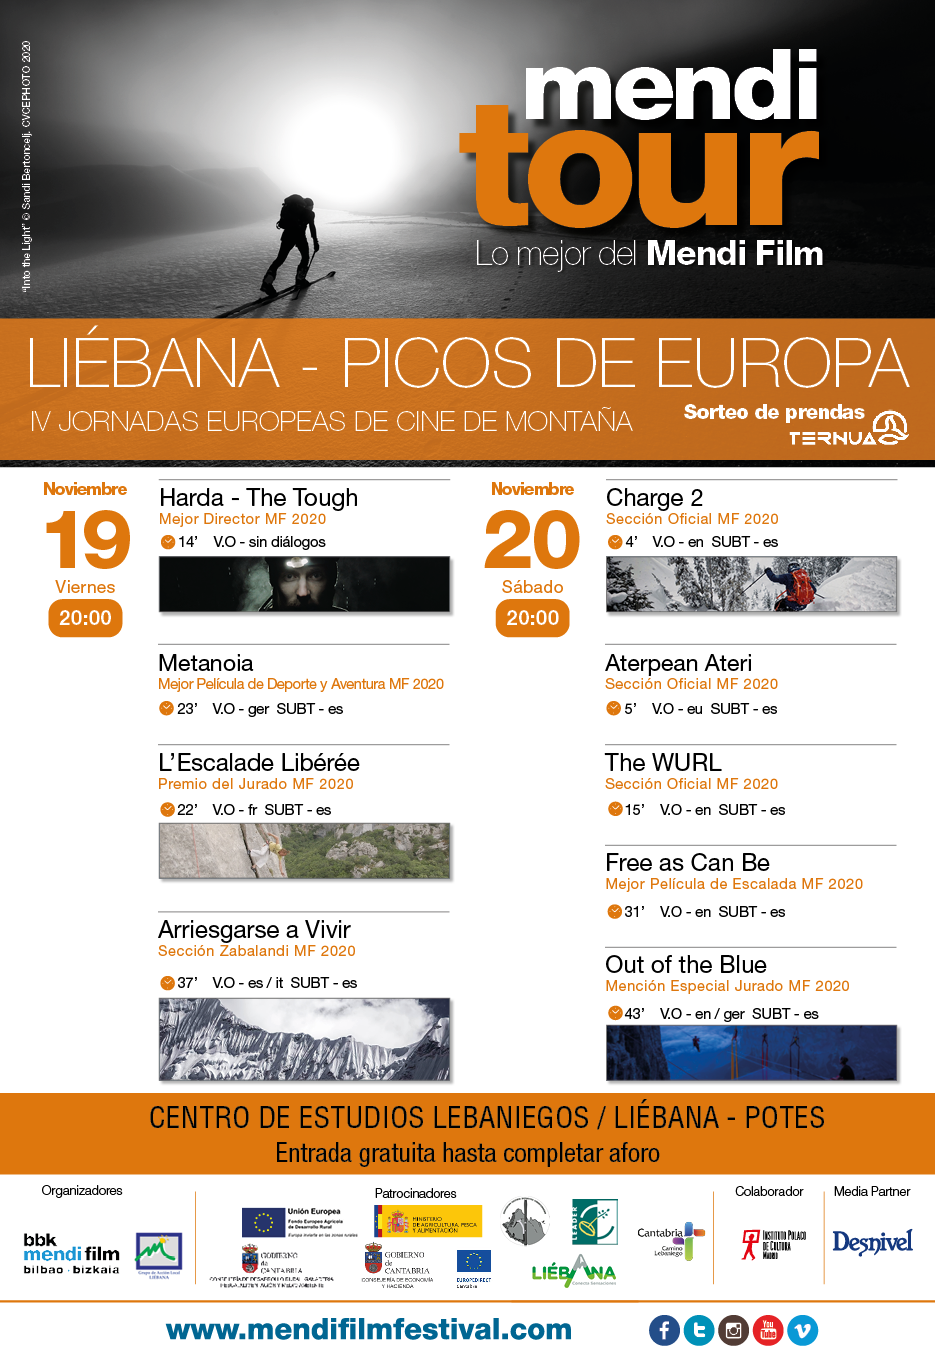 MENDI TOUR IV JORNADAS EUROPEAS DE CINE DE MONTAÑA LIEBANA